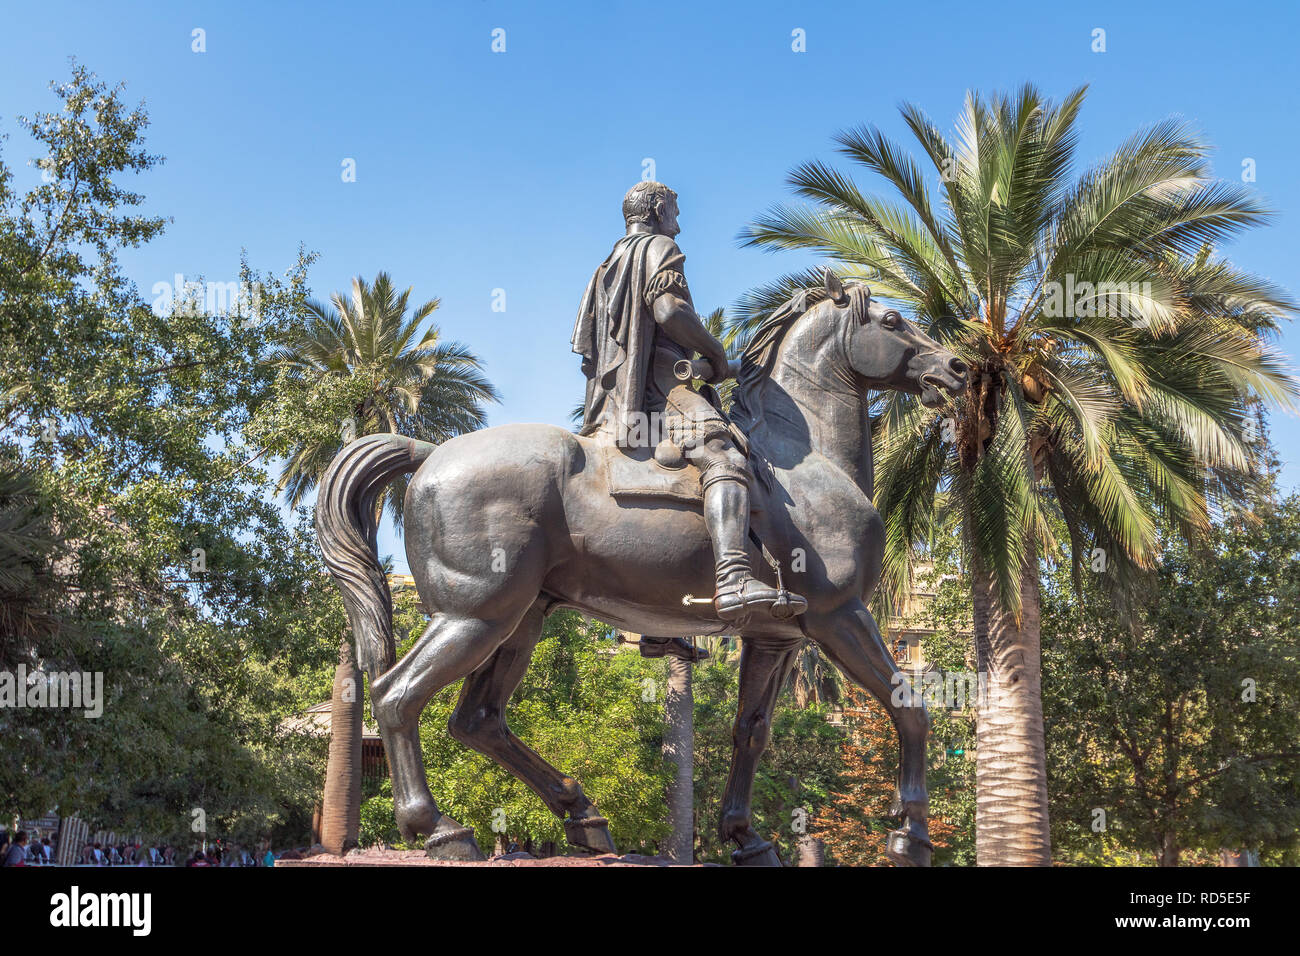 Pedro de Valdivia Statue at Plaza de Armas Square - Santiago, Chile Stock Photo